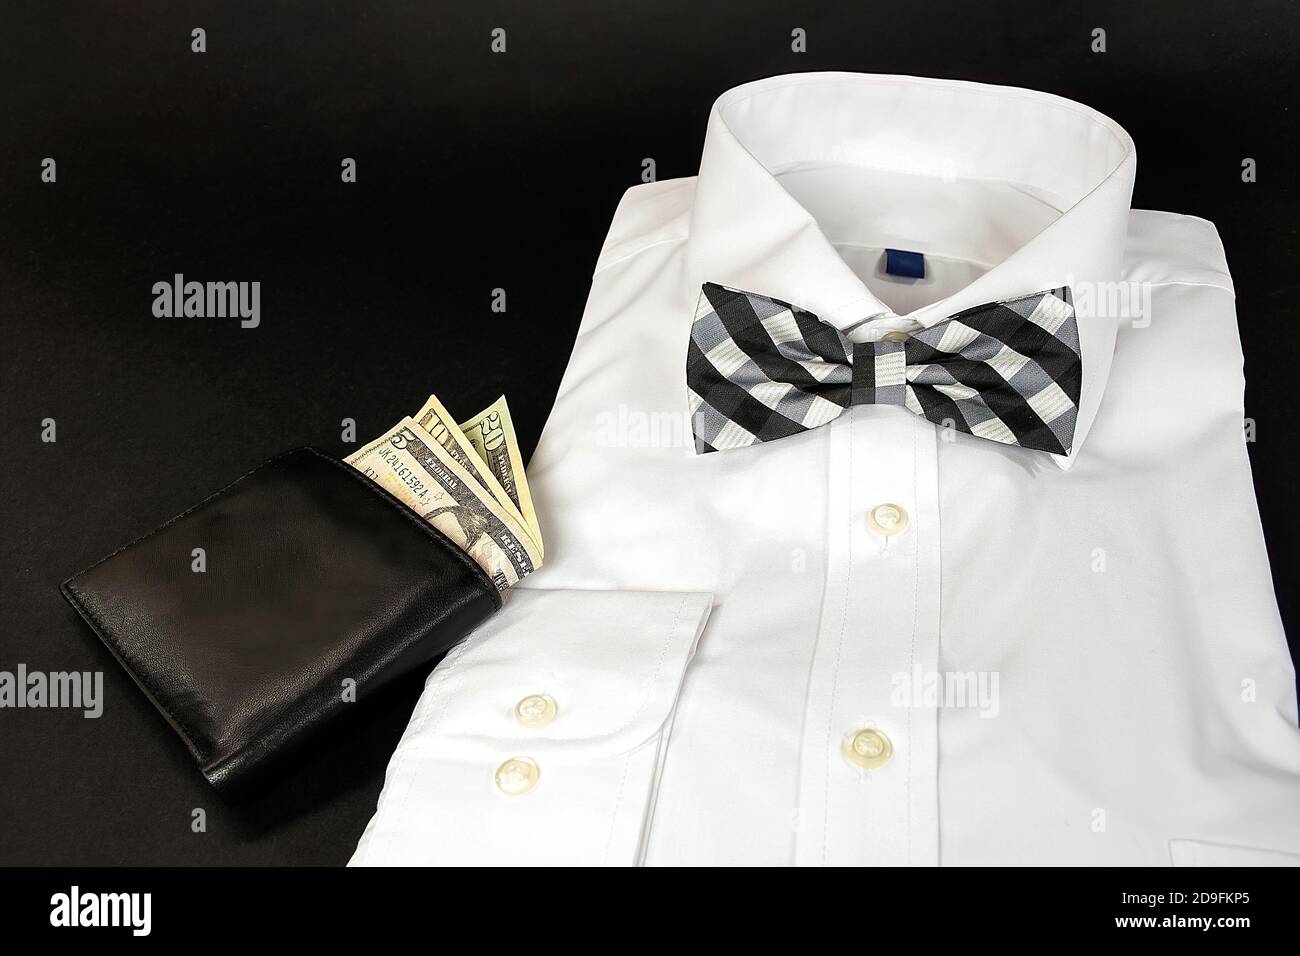 Camisa de vestir blanca doblada con lazo a cuadros blanco y negro corbata y cartera de cuero sobre fondo negro Foto de stock